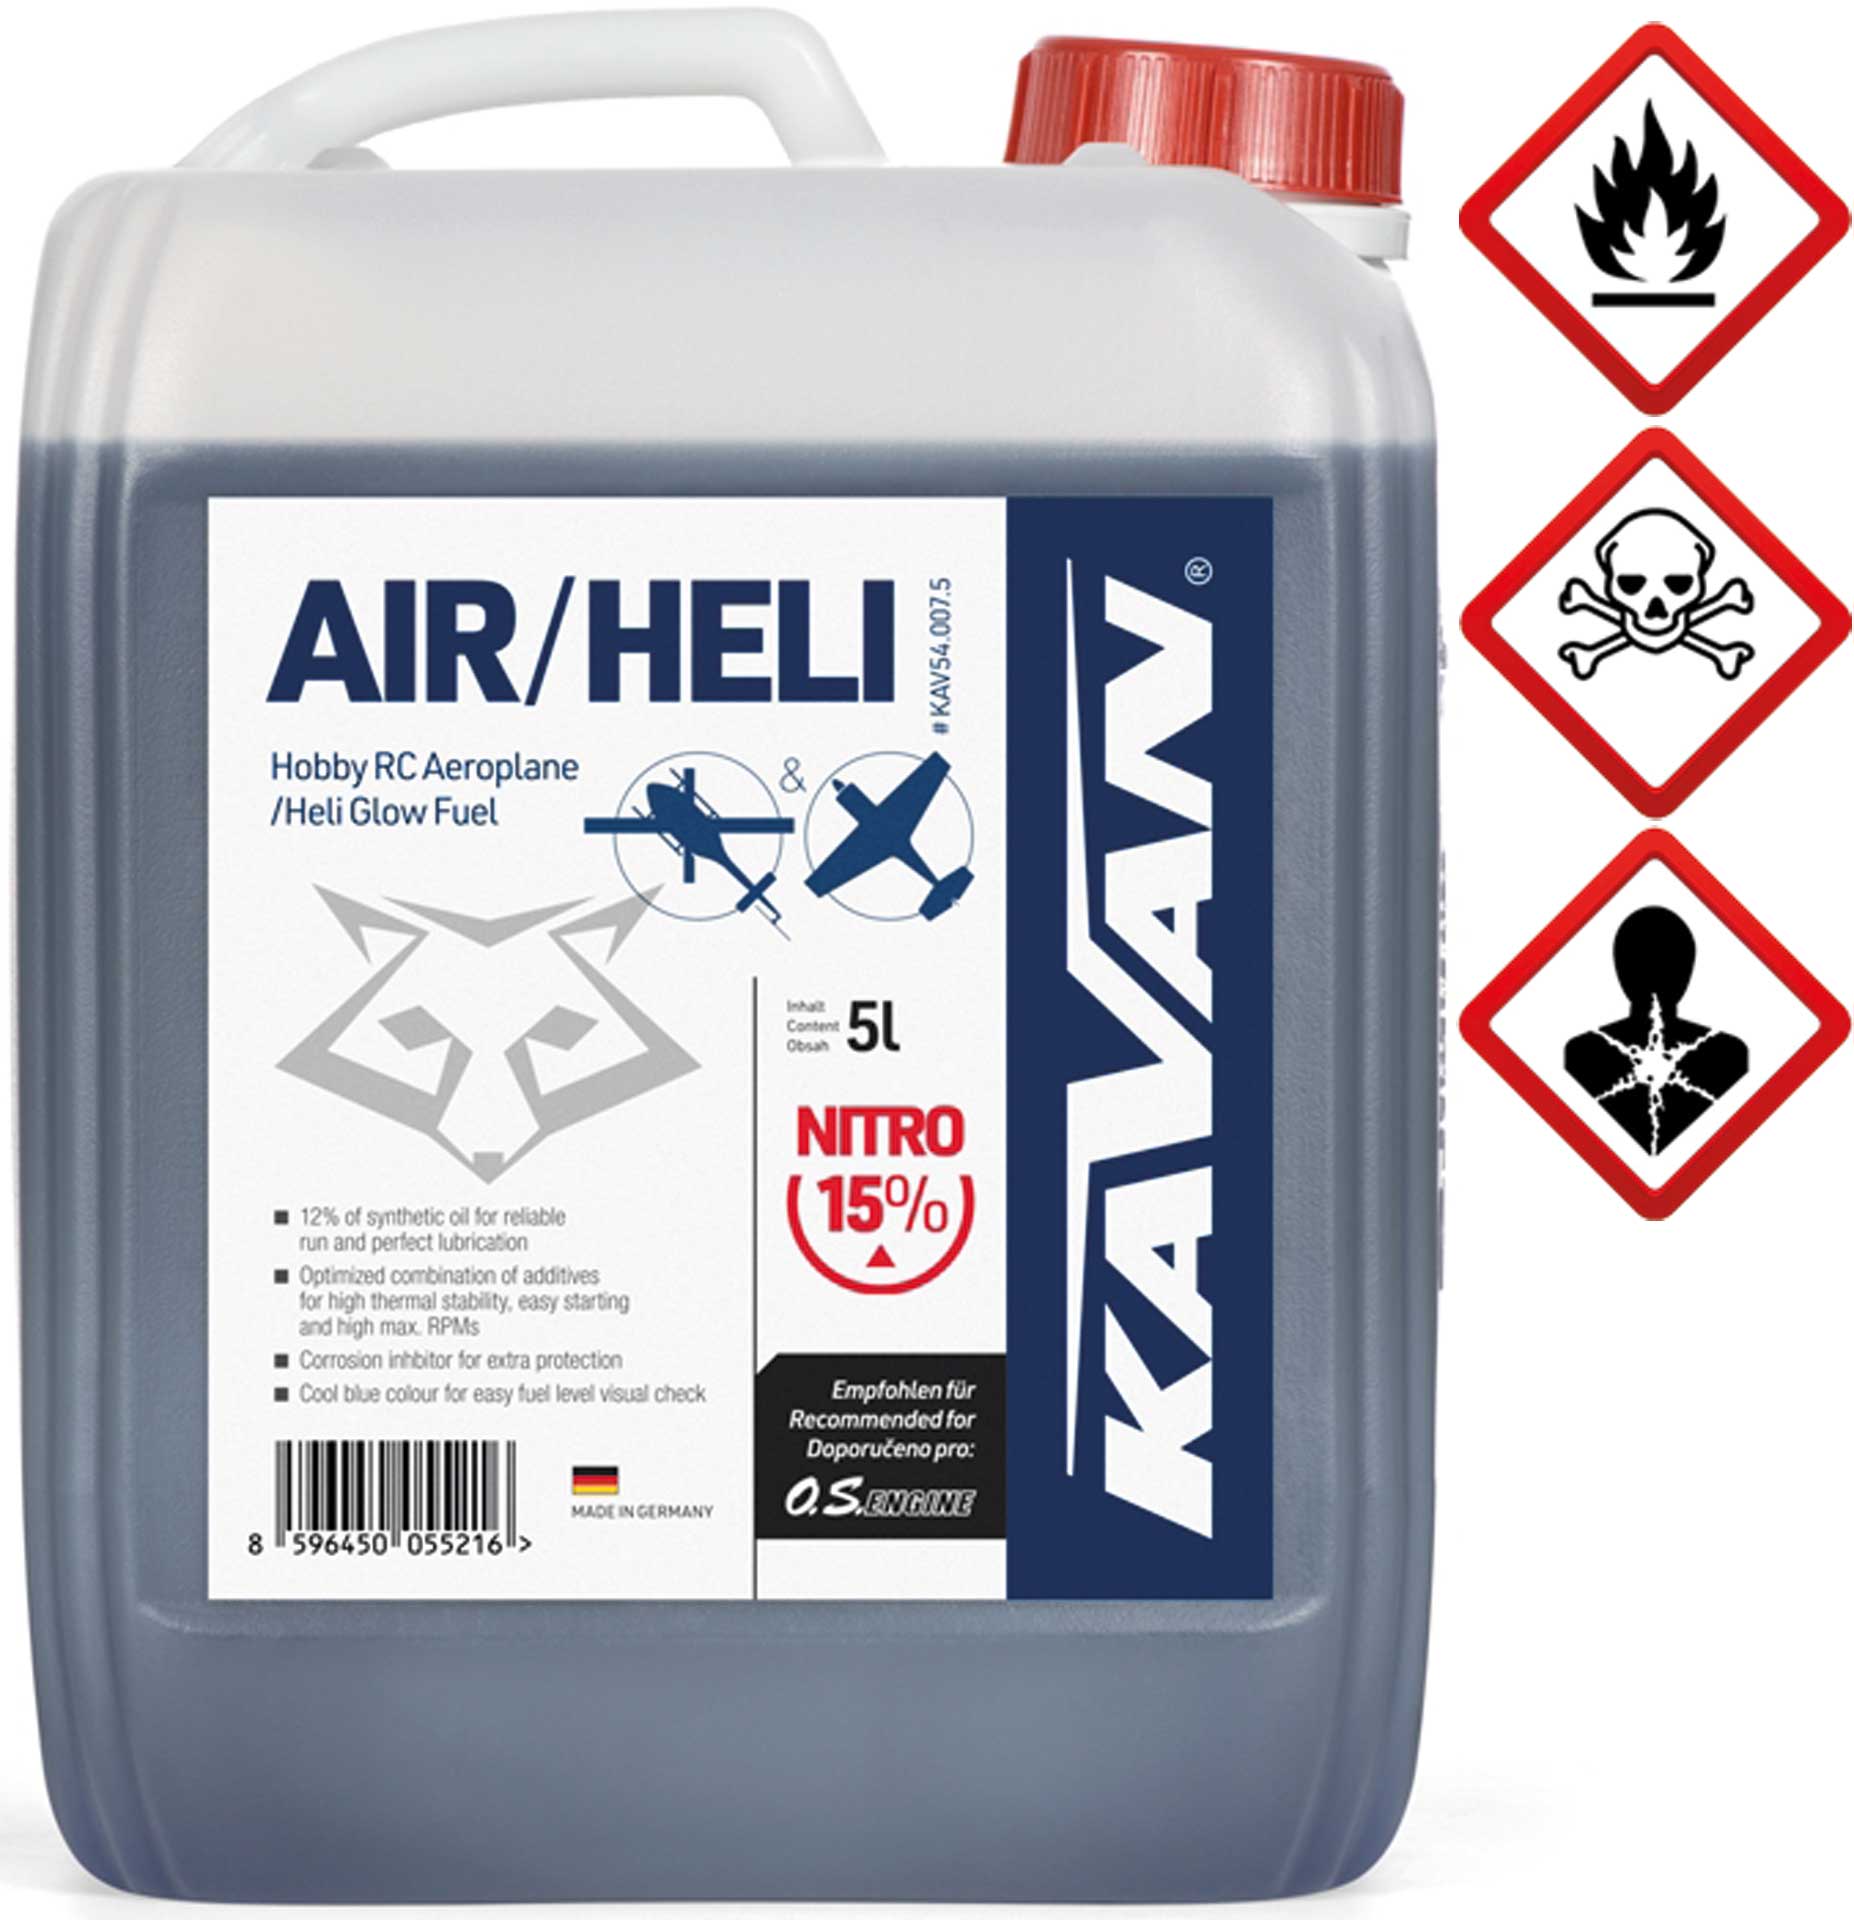 KAVAN Air/Heli 15% nitro 5 Liter Kraftstoff, Sprit, Treibstoff für Glühzünder-Motoren